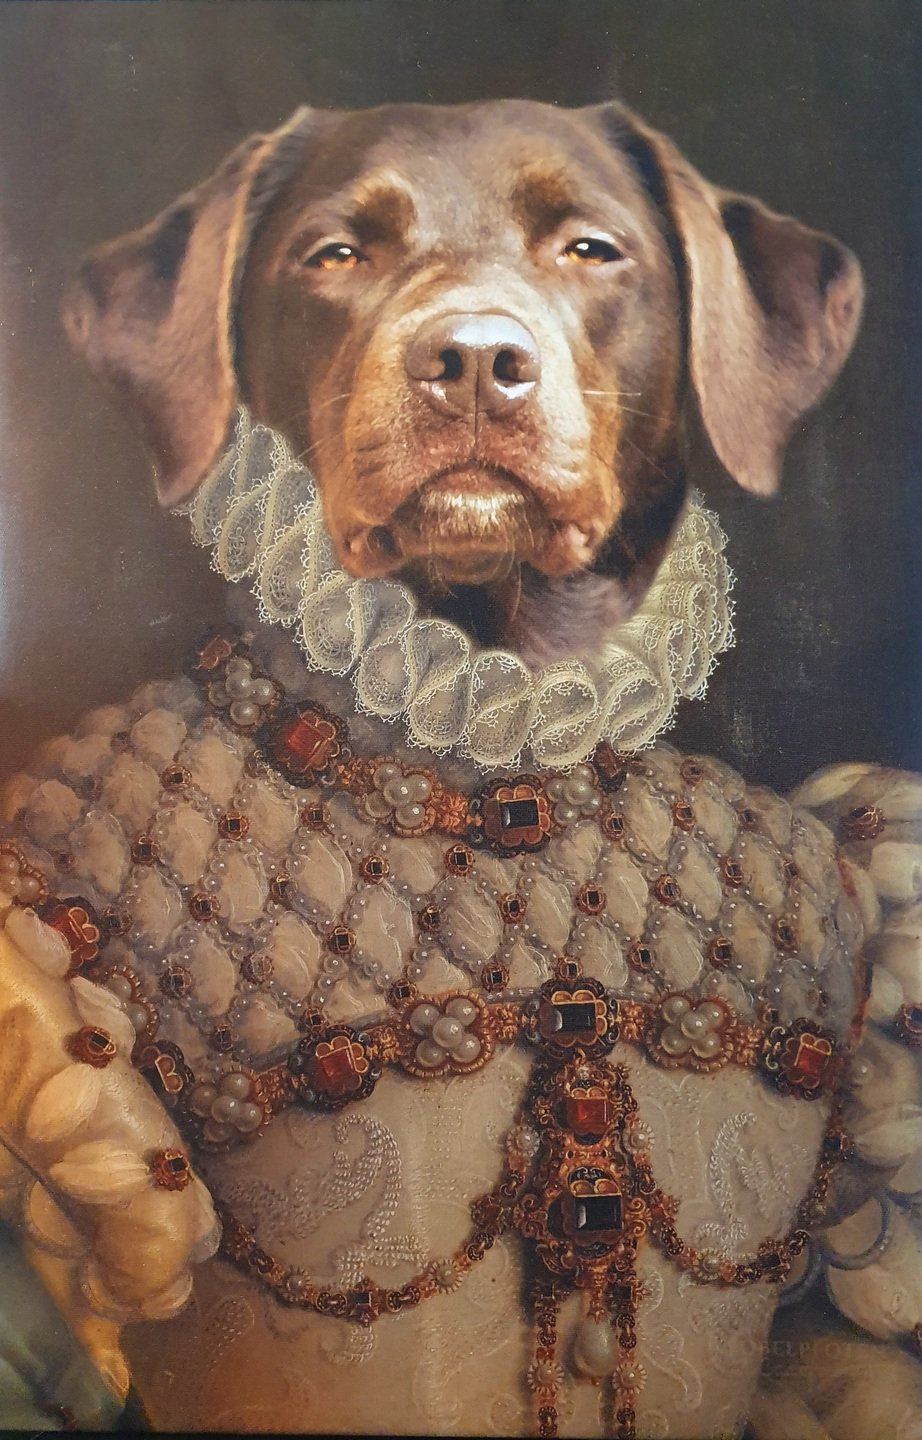 Ernst schauender Hund auf einer Leinwand als Porträt